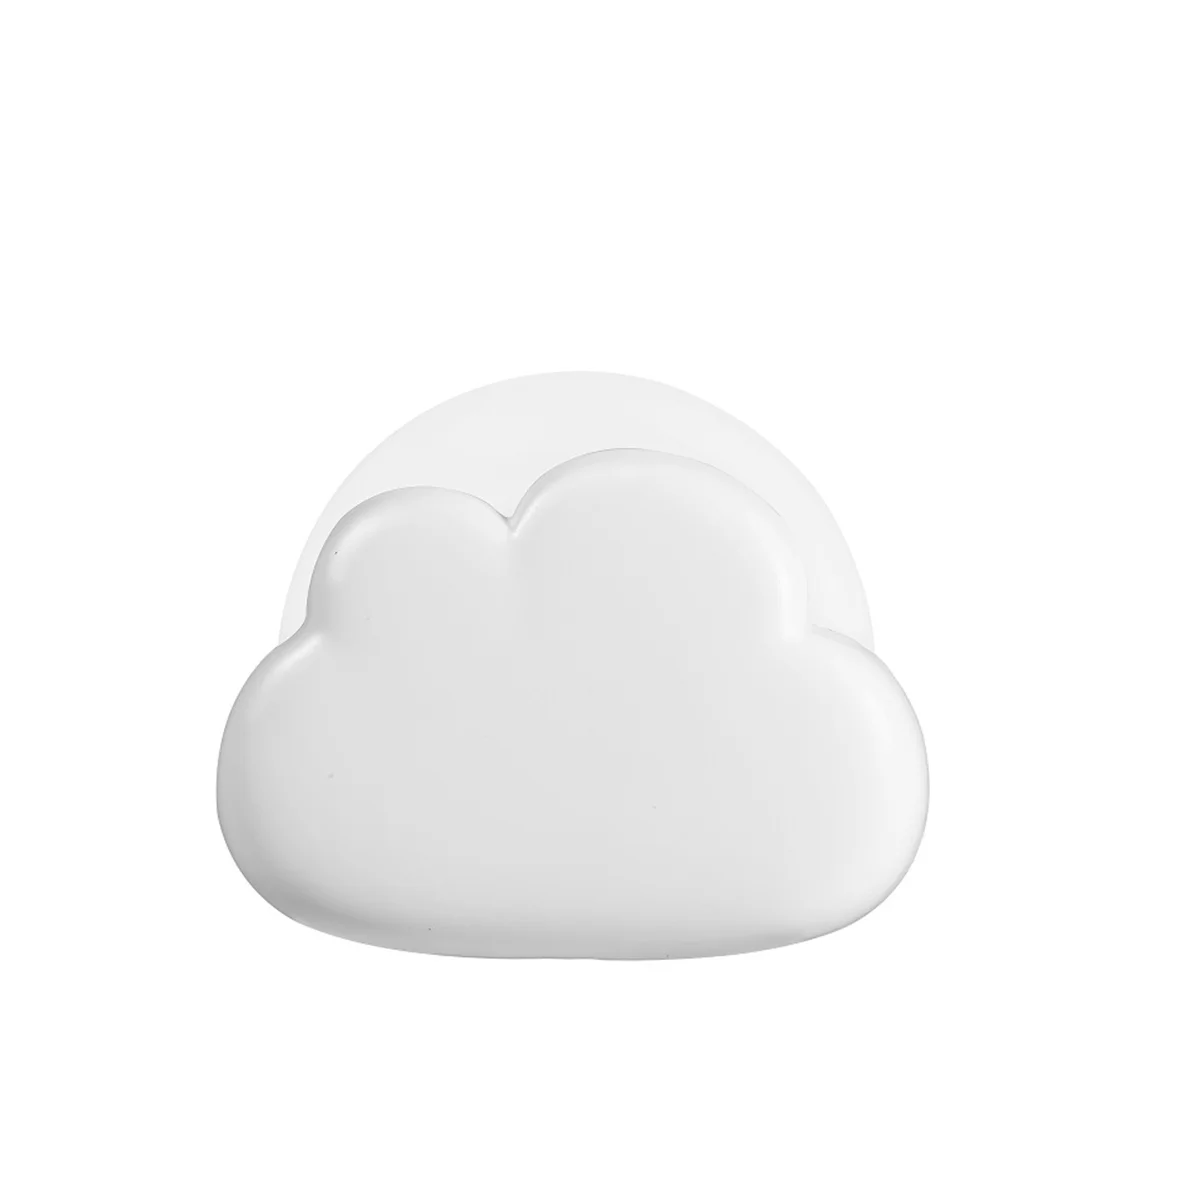 

Ночник в виде облака, настольная декоративная настольная мини-лампа для спальни, подарок на день рождения, ночник в виде облака знаменитости, цвет белый